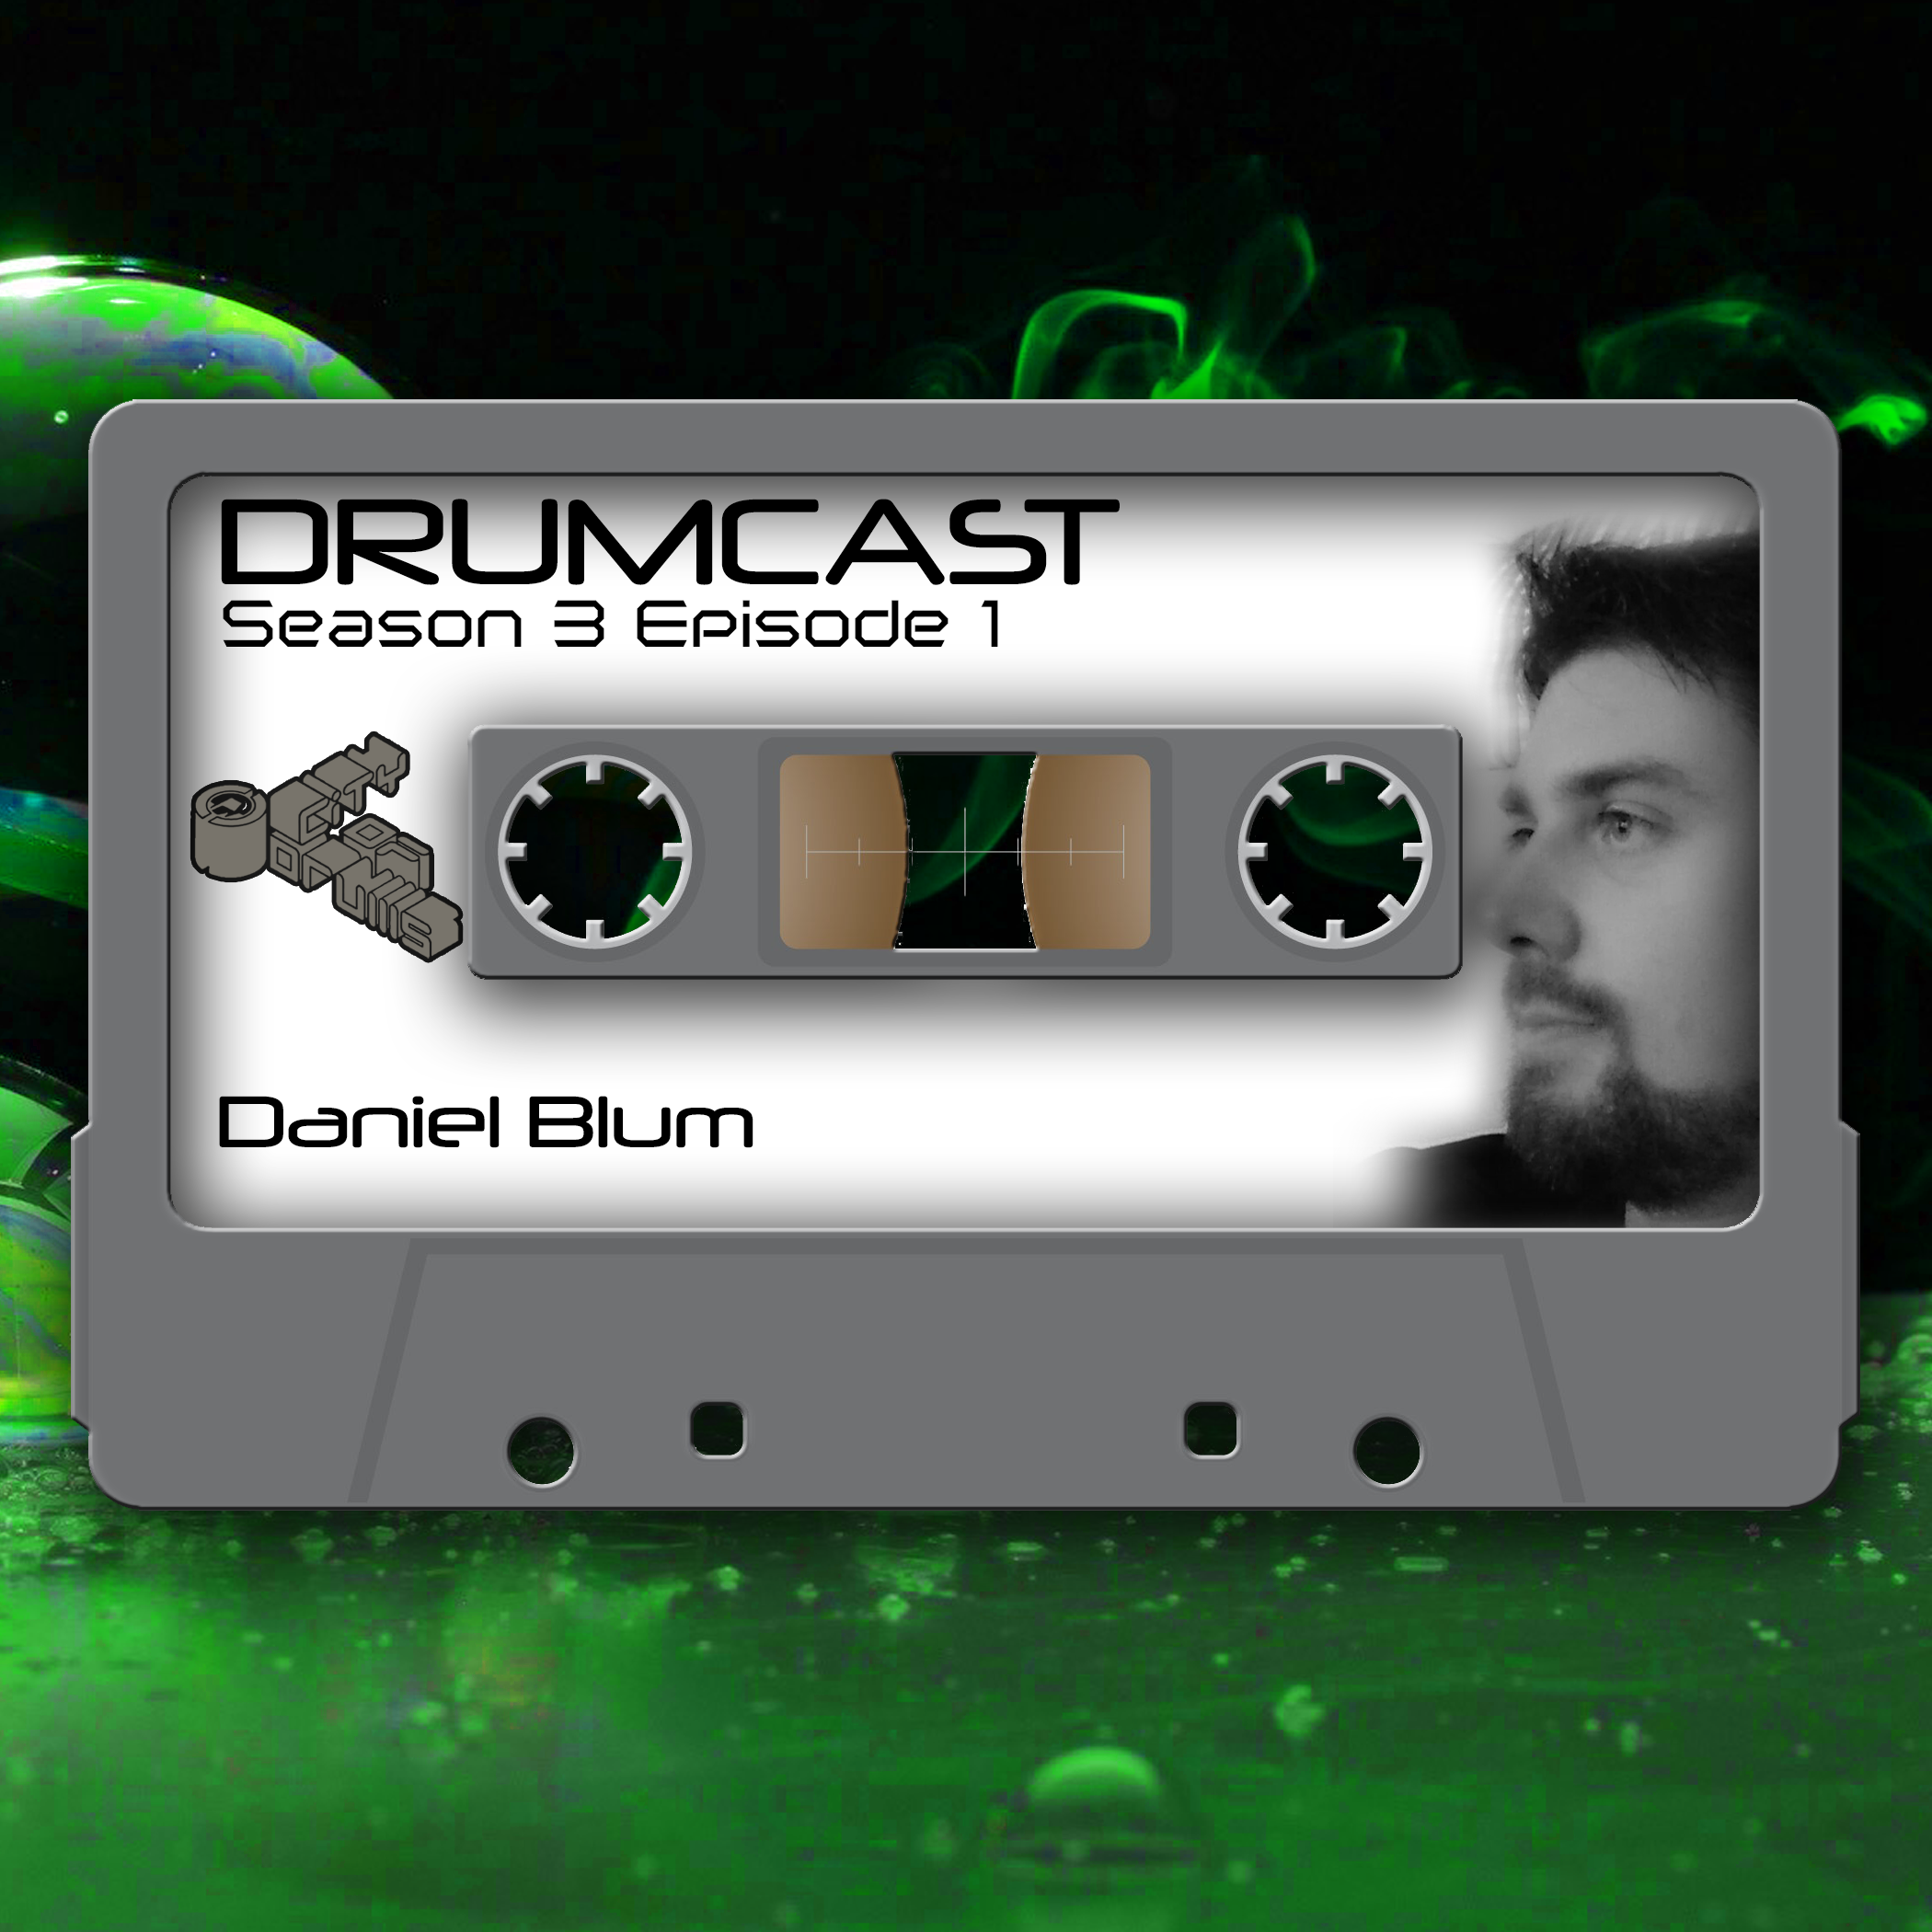 DRUMCAST Season 3 Episode 1 mit Daniel Blum! 7